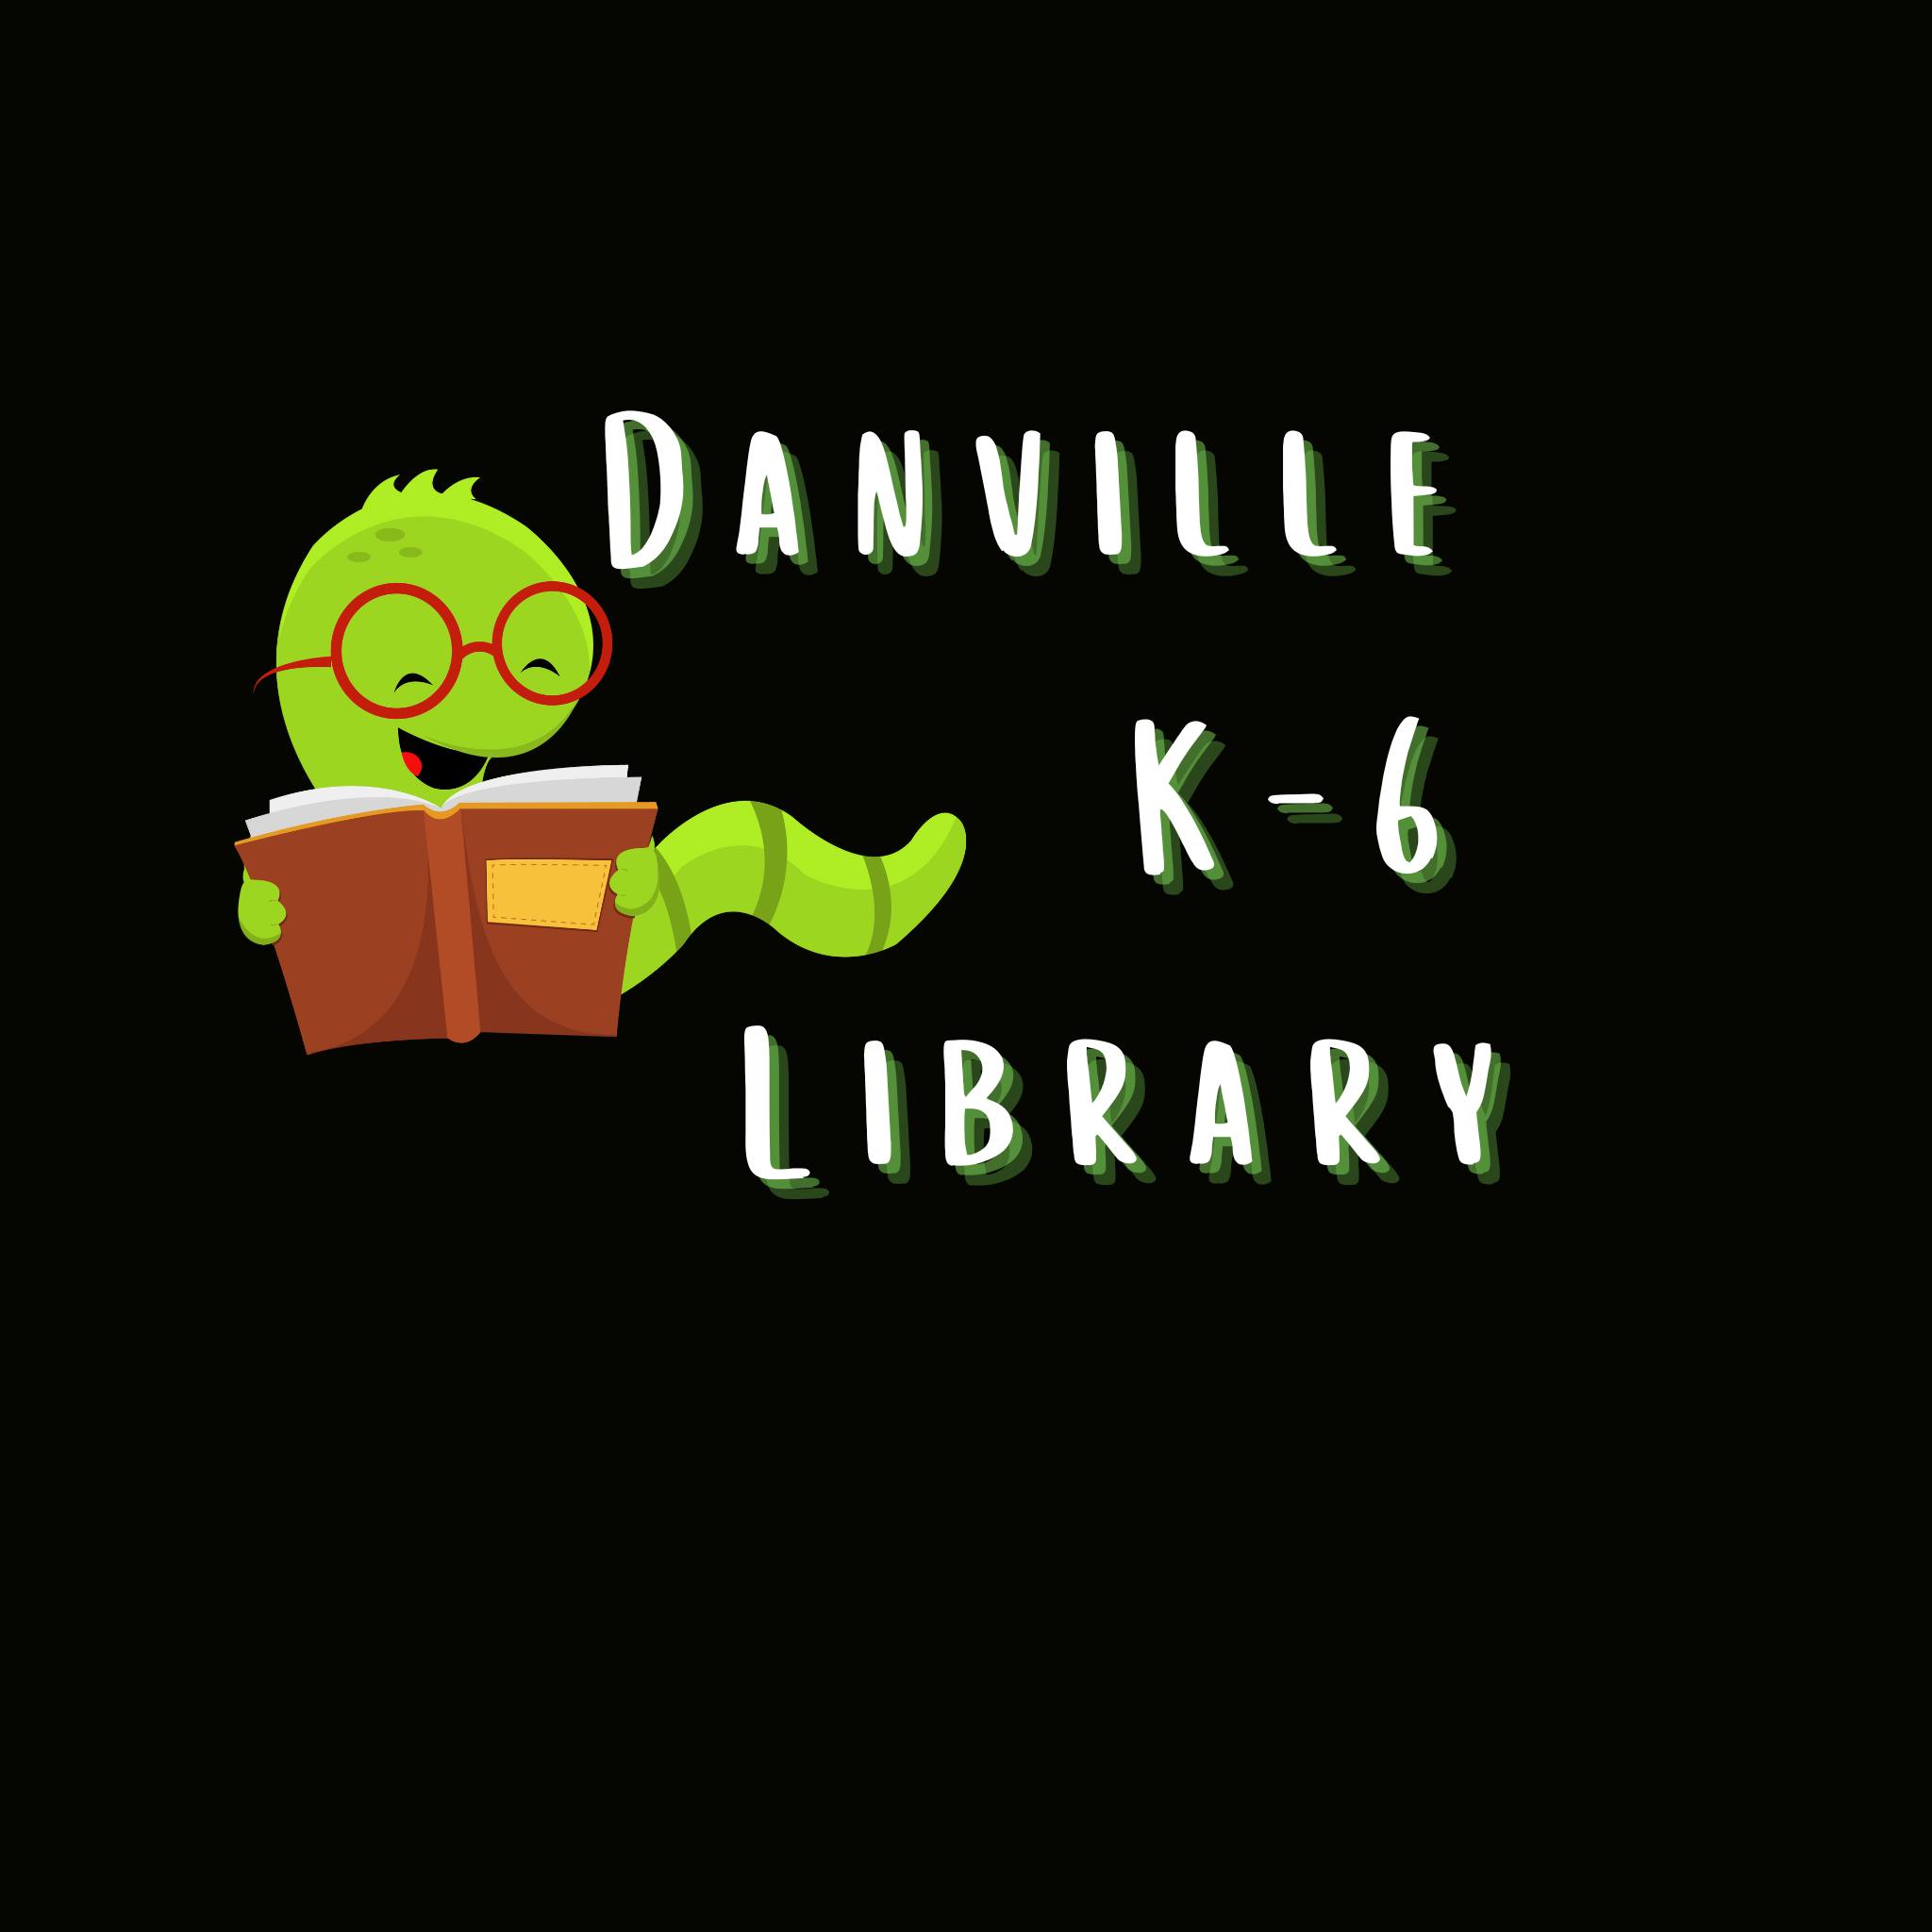 Danville K-6 Library